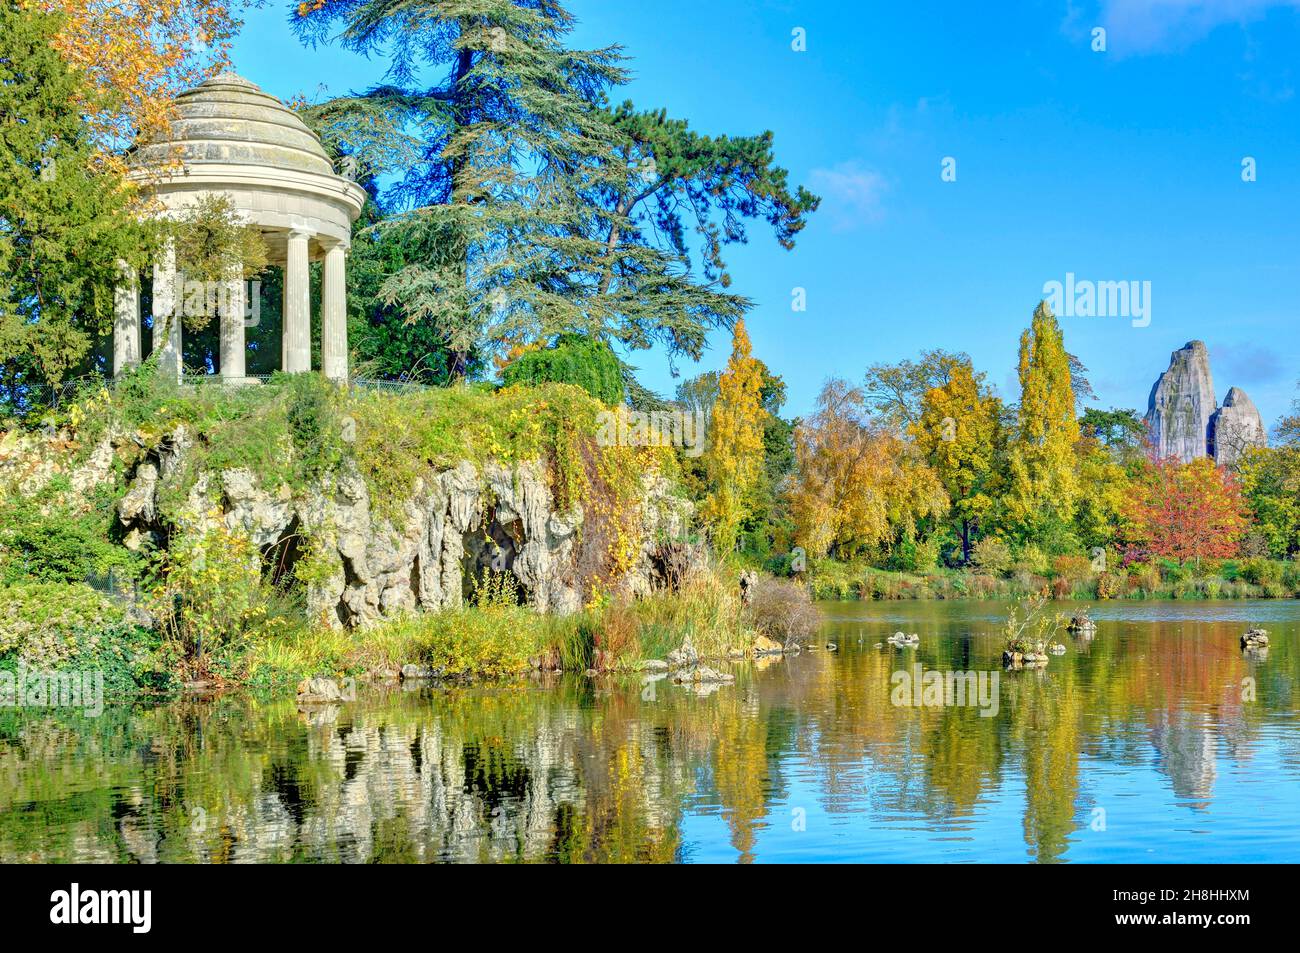 France, Paris, Bois de Vincennes, Daumesnil lake in autumn Stock Photo